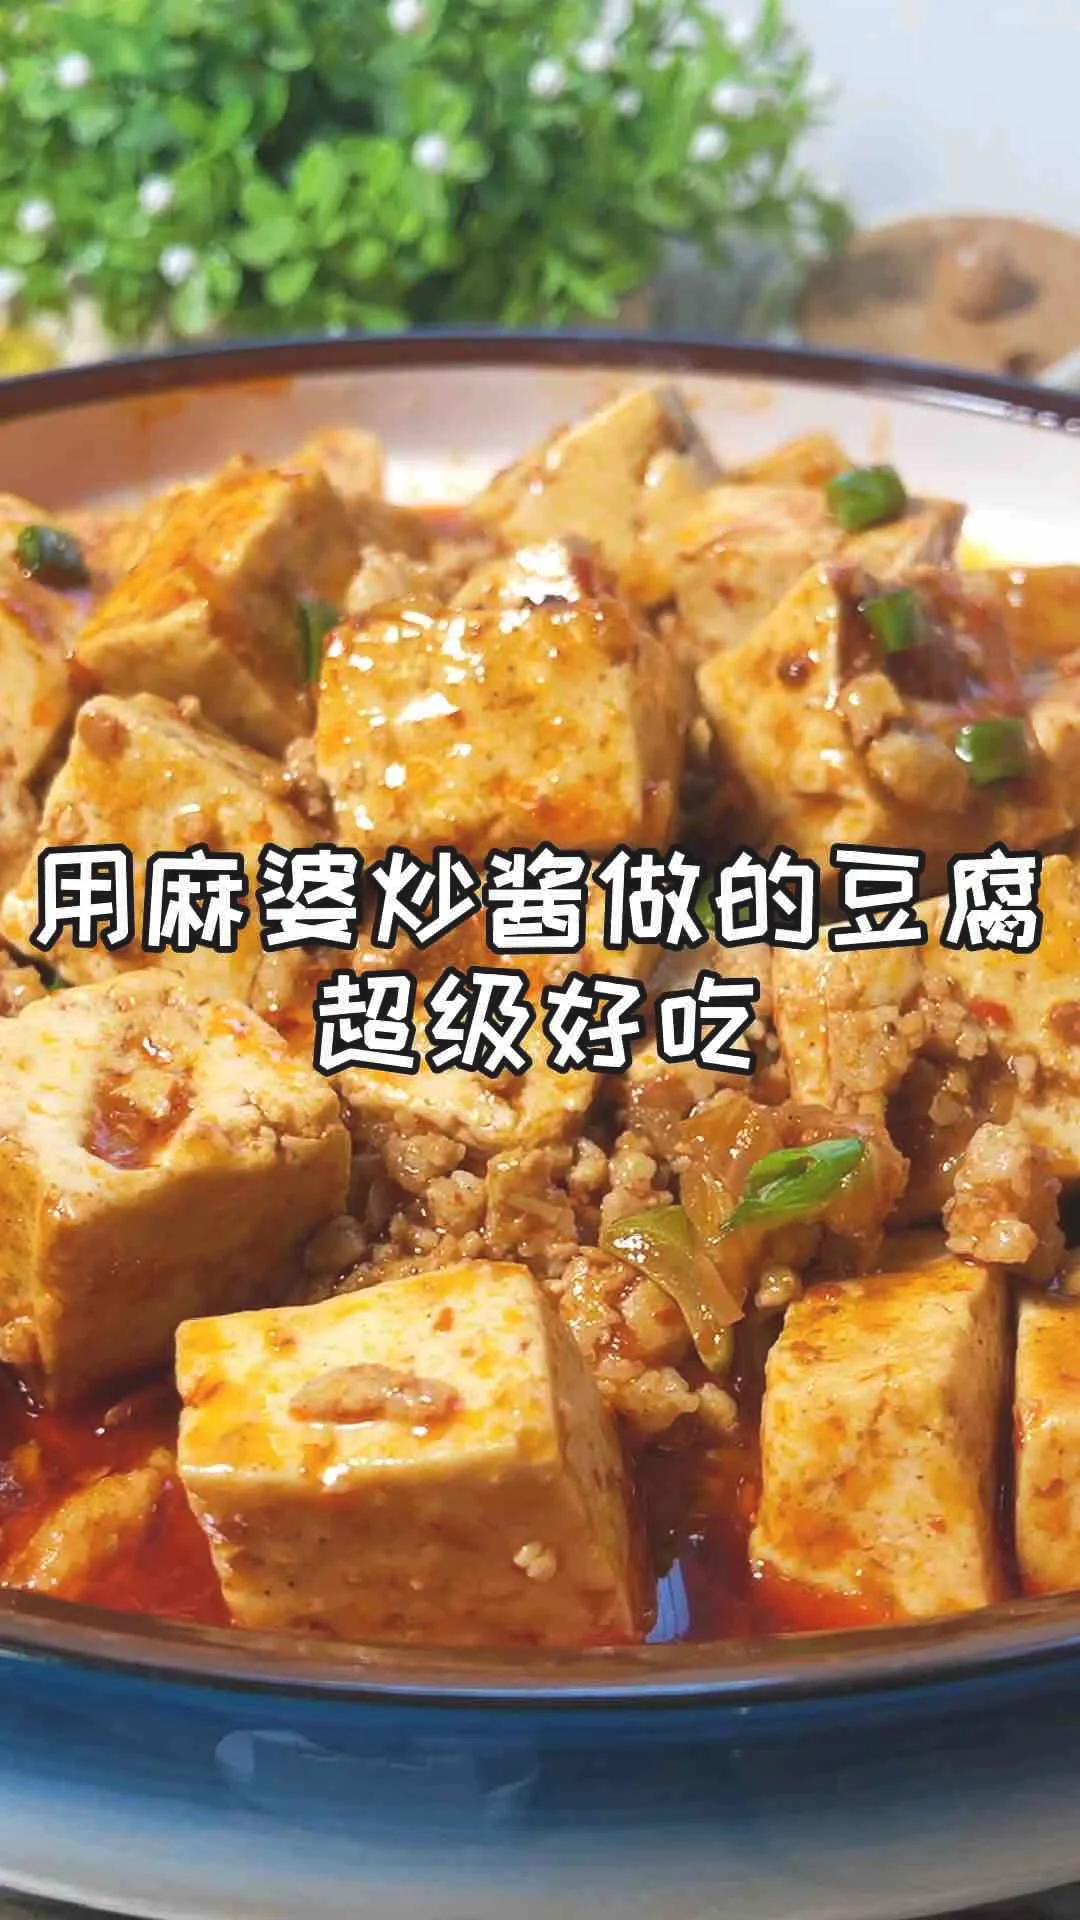 麻婆炒豆腐的做法-麻辣味炒菜谱